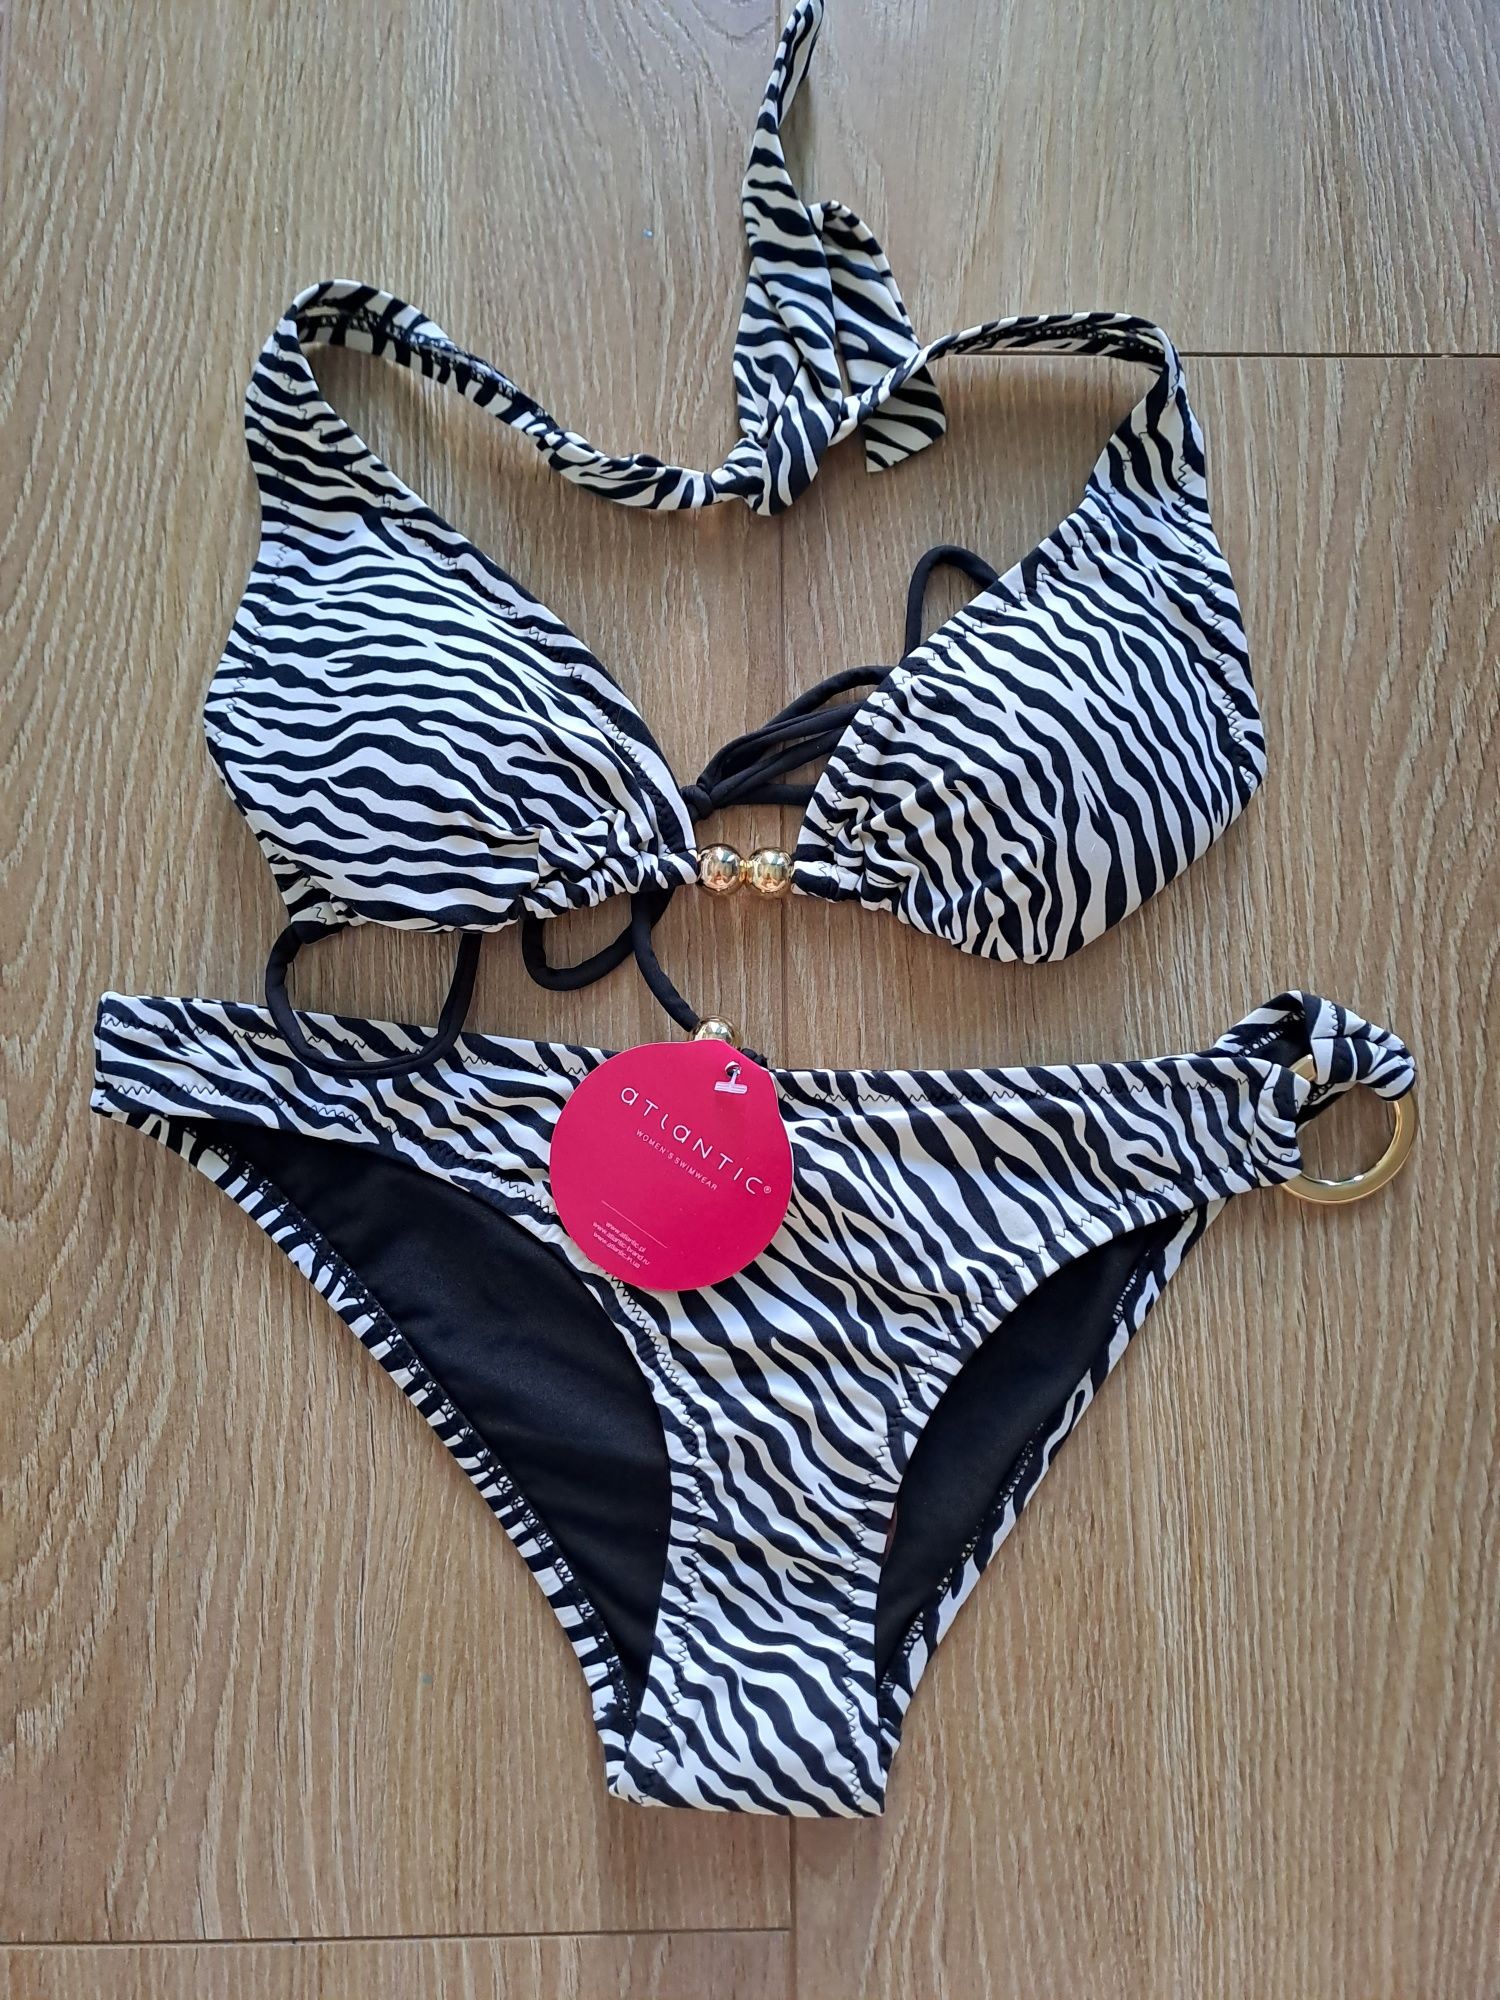 Dwuczęściowy kostium kąpielowy Atlantic, rozmiar S, bikini